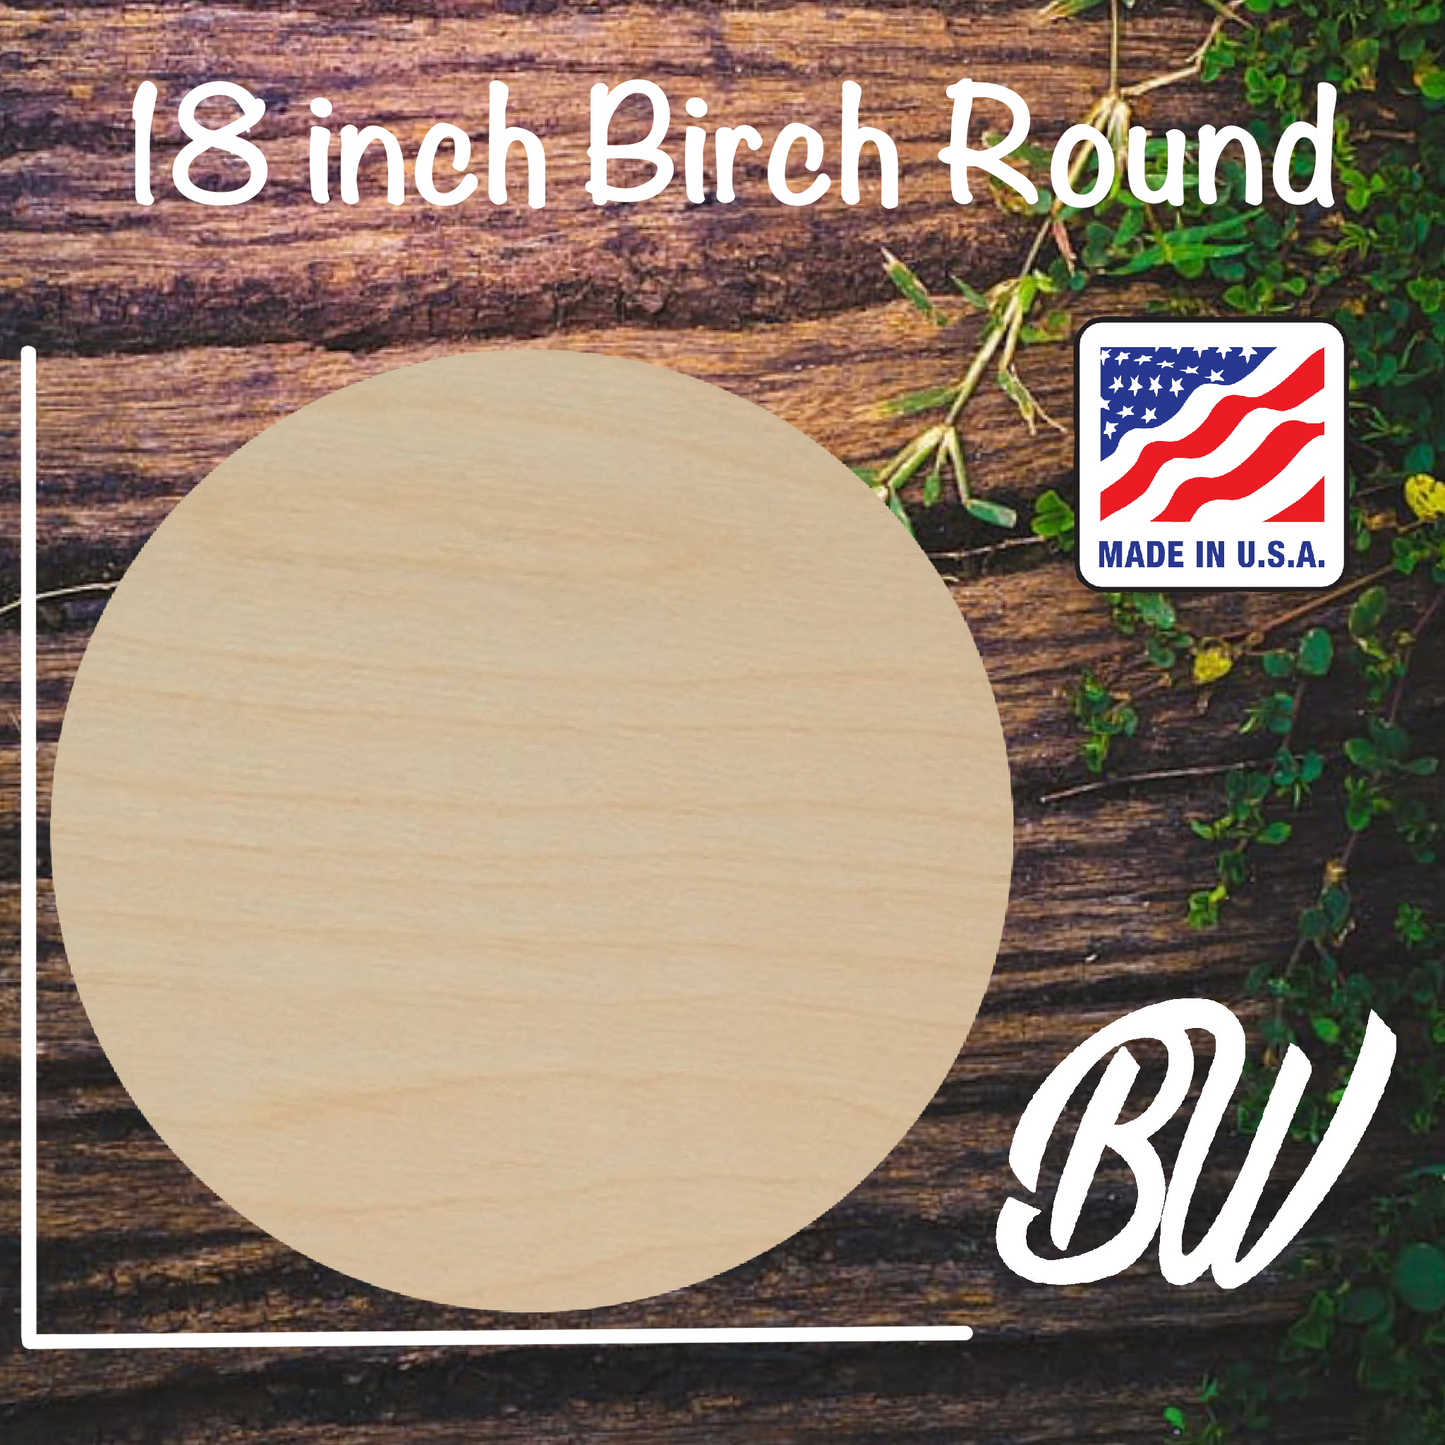 18inch Birch Round ( 1/4 inch )